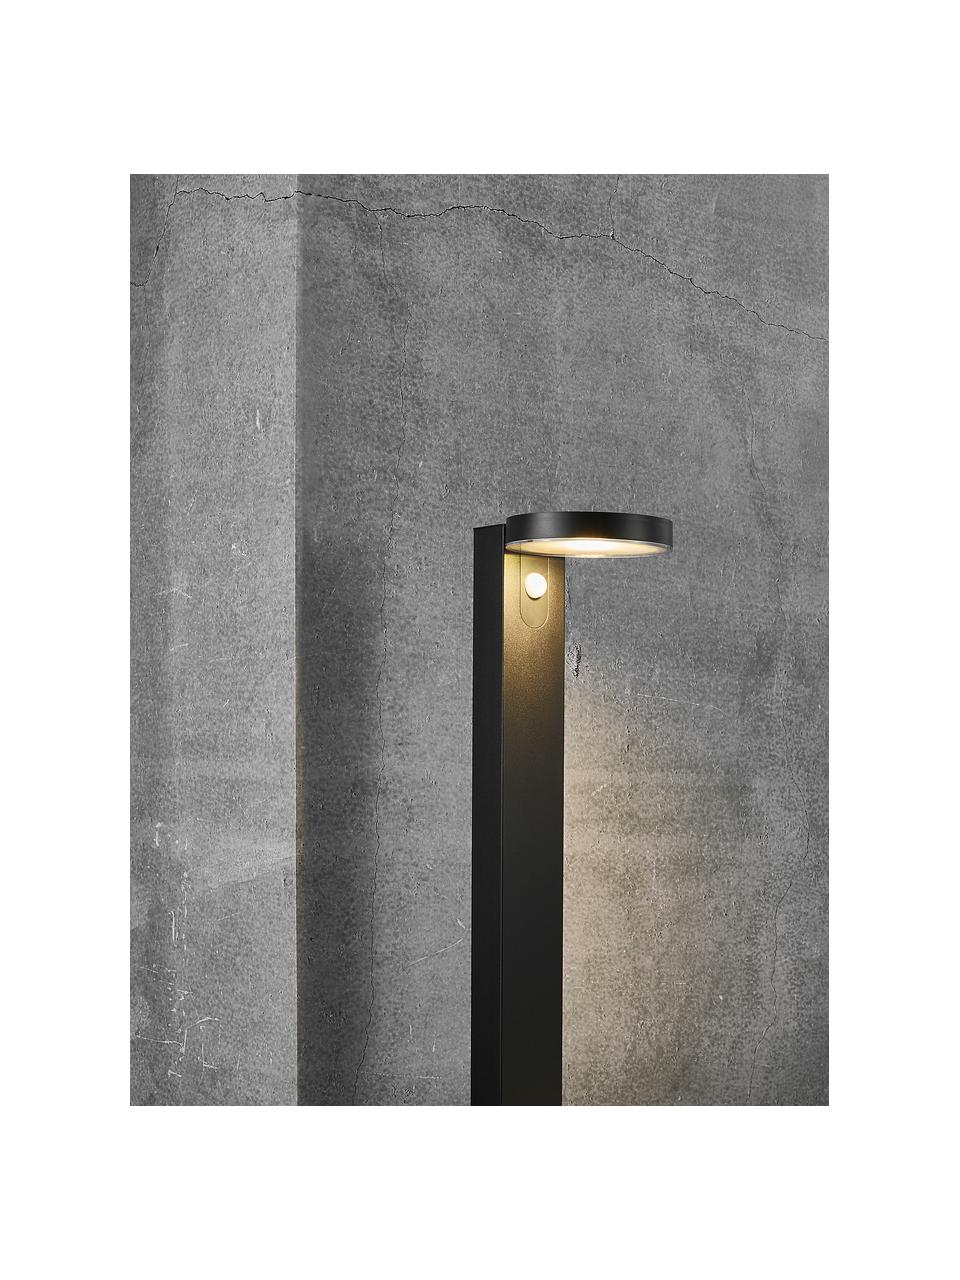 Solar padverlichting Rica met bewegingssensor, Lampenkap: kunststof, Lampvoet: gecoat staal, Zwart, B 15 cm x H 60 cm